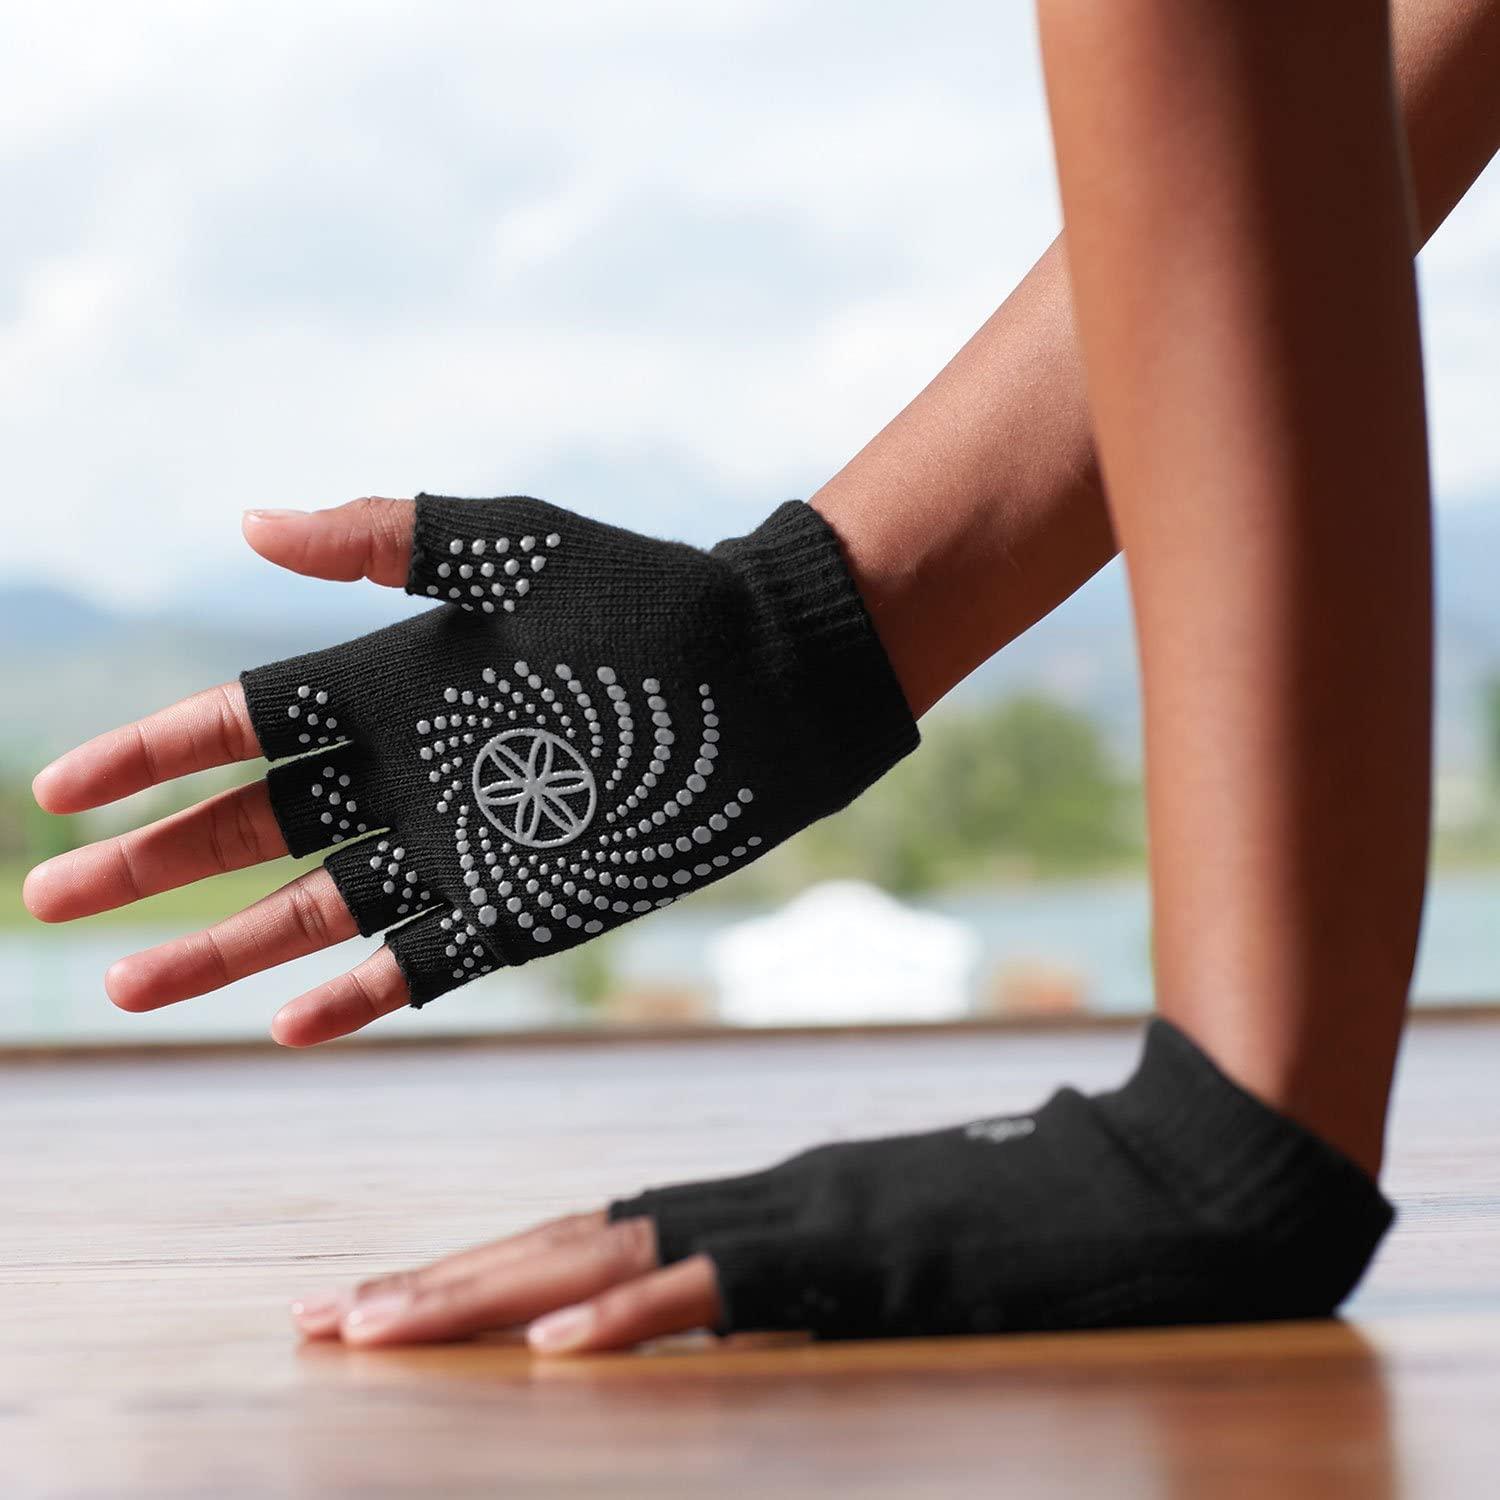 GAIAM, Other, Gaiam Yoga Noslip Socks Gloves